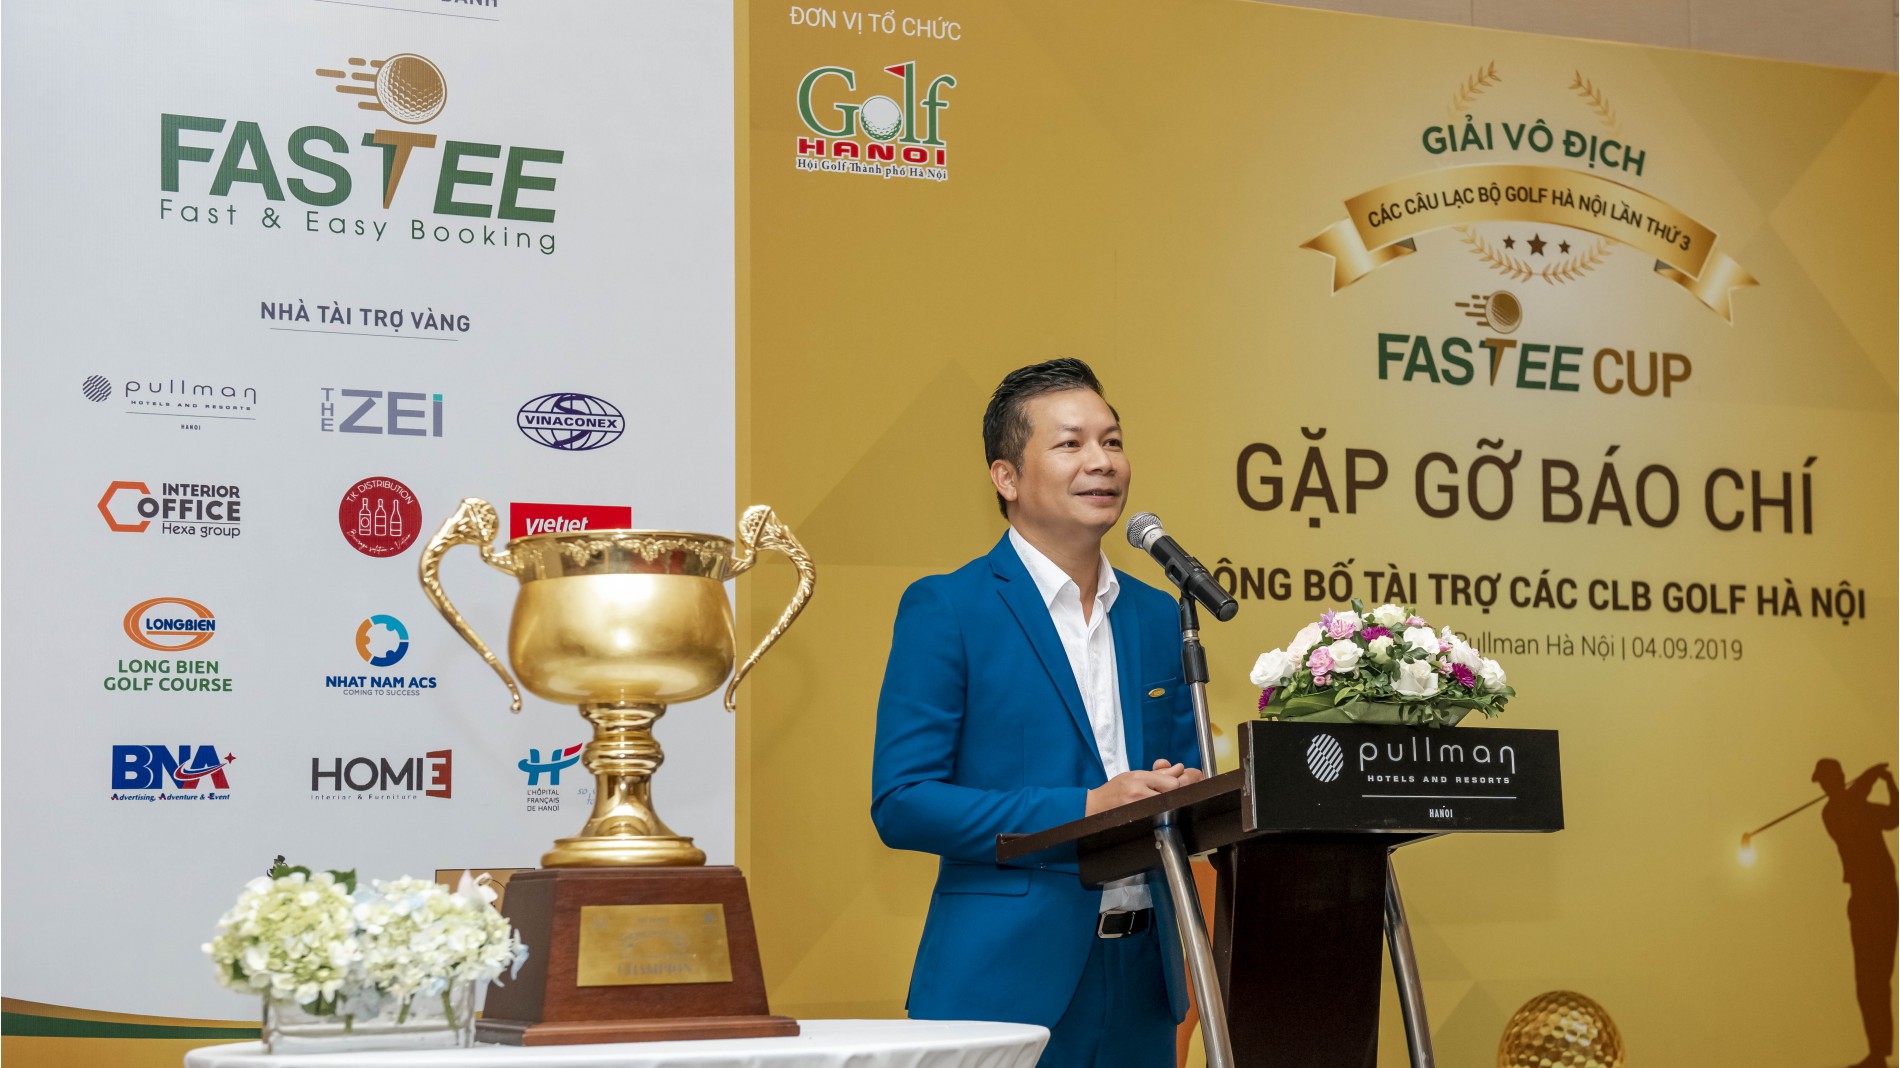 Shark' Phạm Thanh Hưng - đại diện NTT xứng danh Fastee phát biểu tại sự kiện